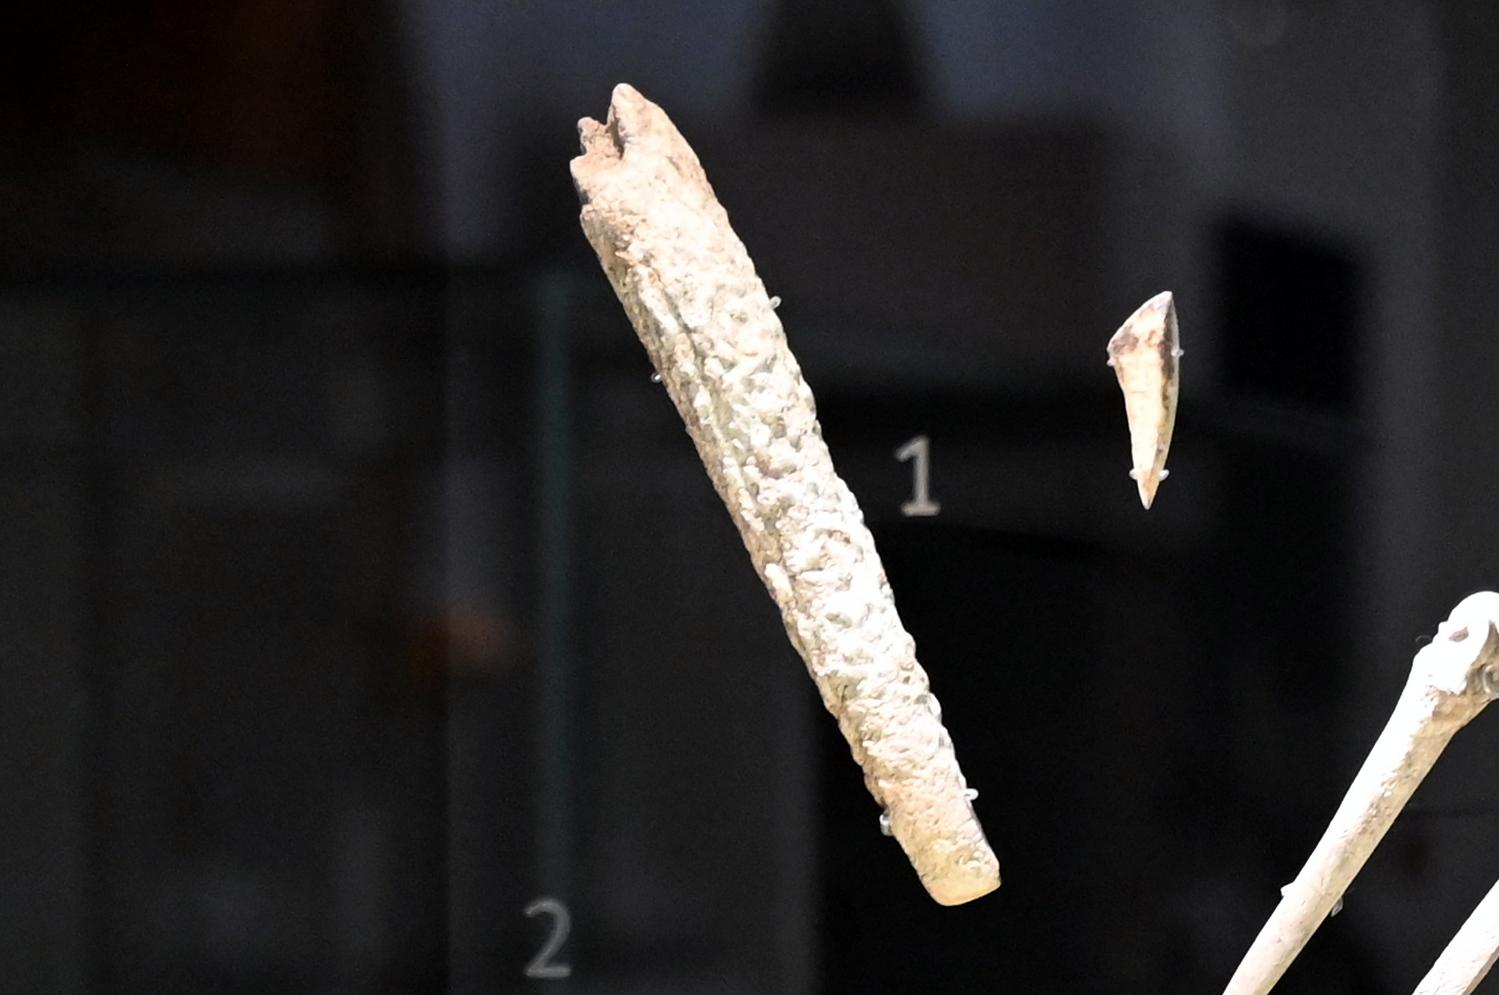 Retuscheur, Neolithikum (Jungsteinzeit), 5500 - 1700 v. Chr., 5200 - 5000 v. Chr., Bild 1/3